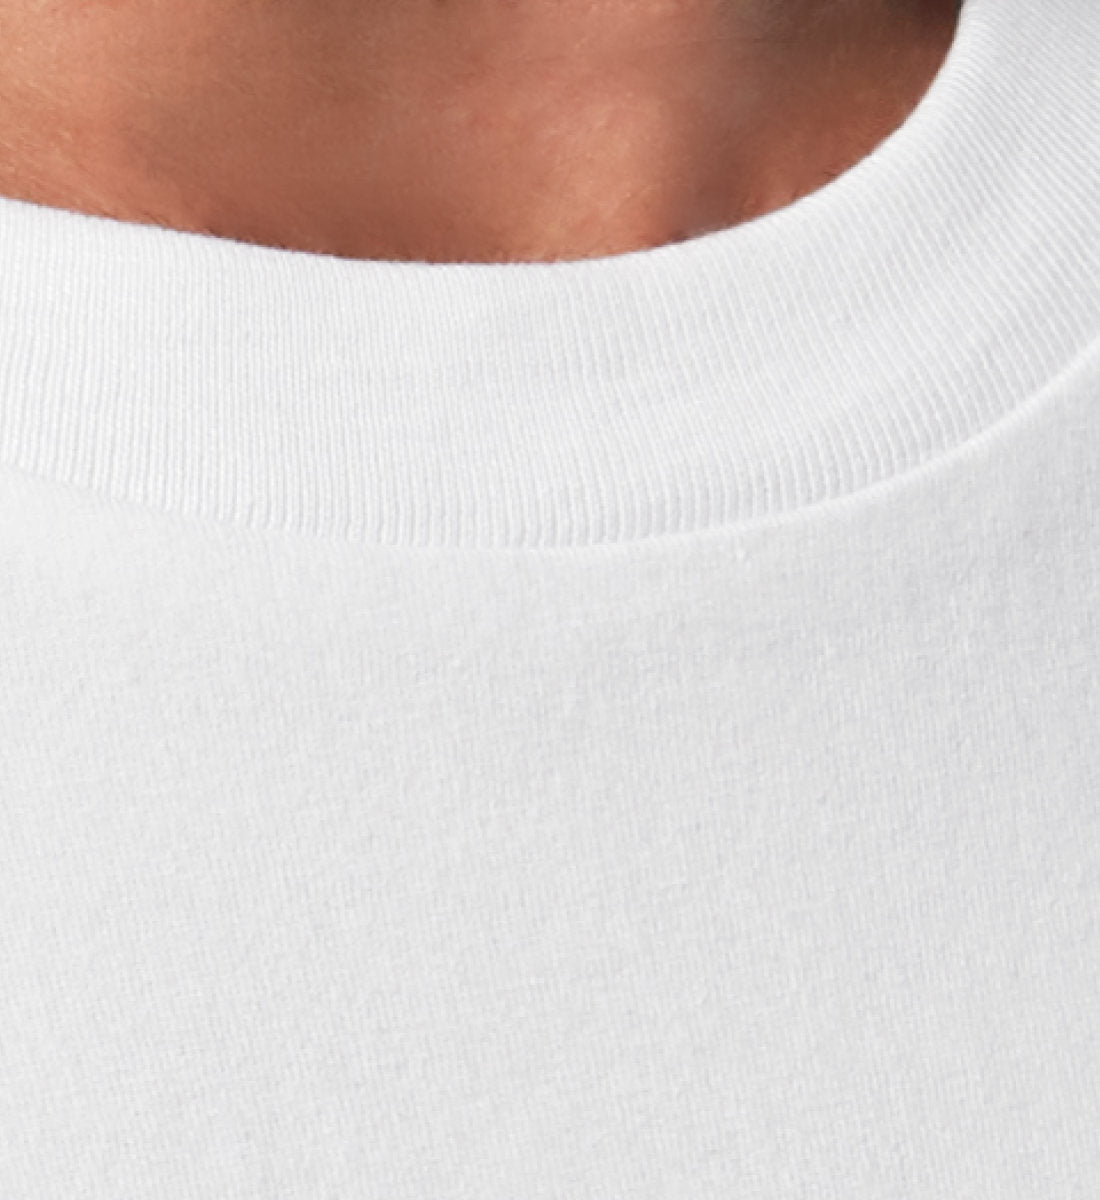 Weißes T-Shirt Unisex Relaxed Fit für Frauen und Männer bedruckt mit dem Design der Roger Rockawoo Clothing Kollektion Boxing delights society